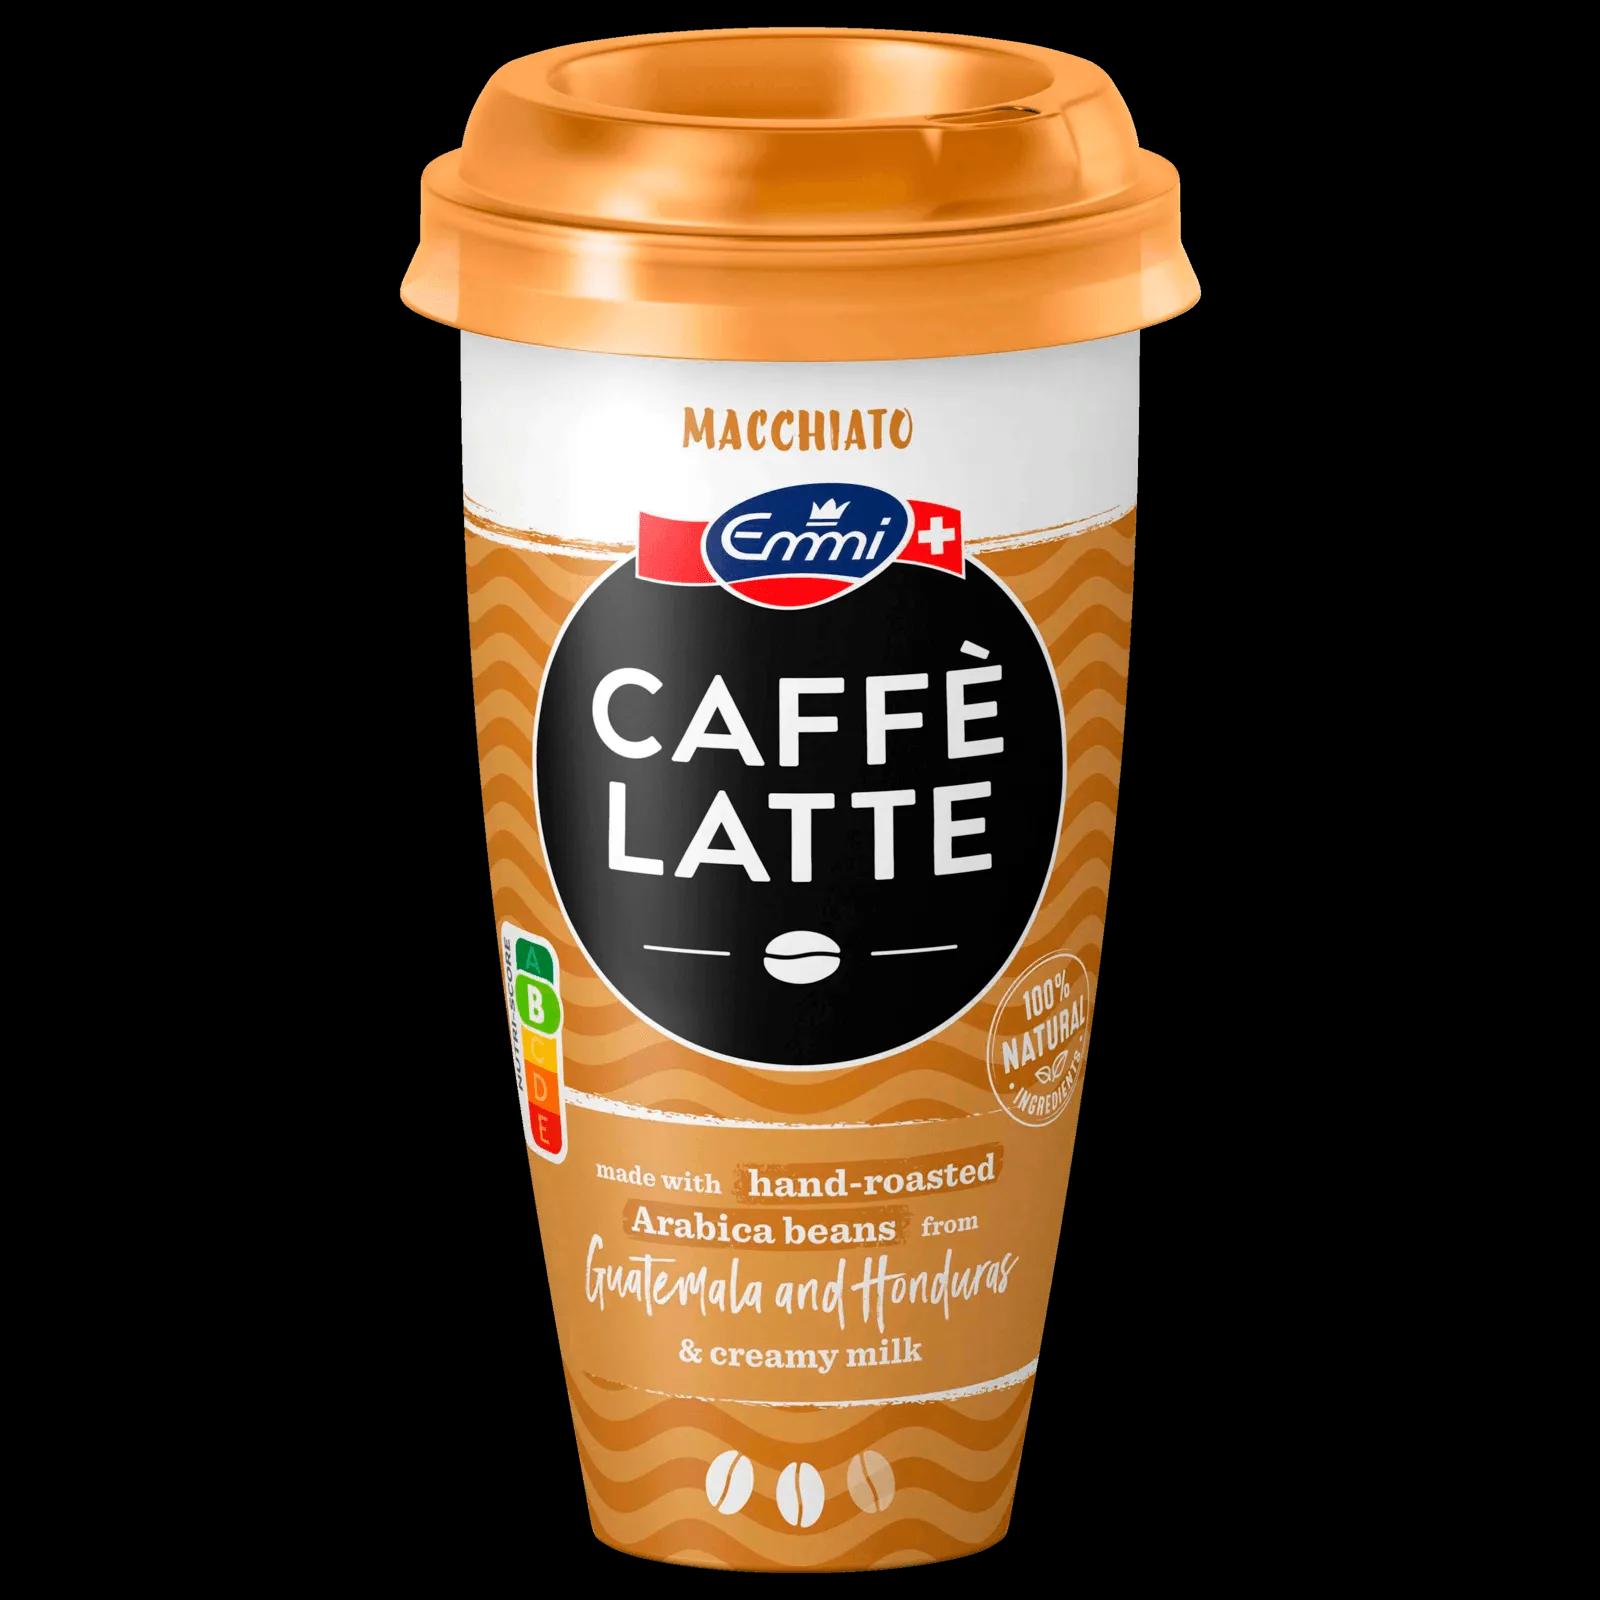 Emmi Caffe Latte Macchiato 230ml bei REWE online bestellen!